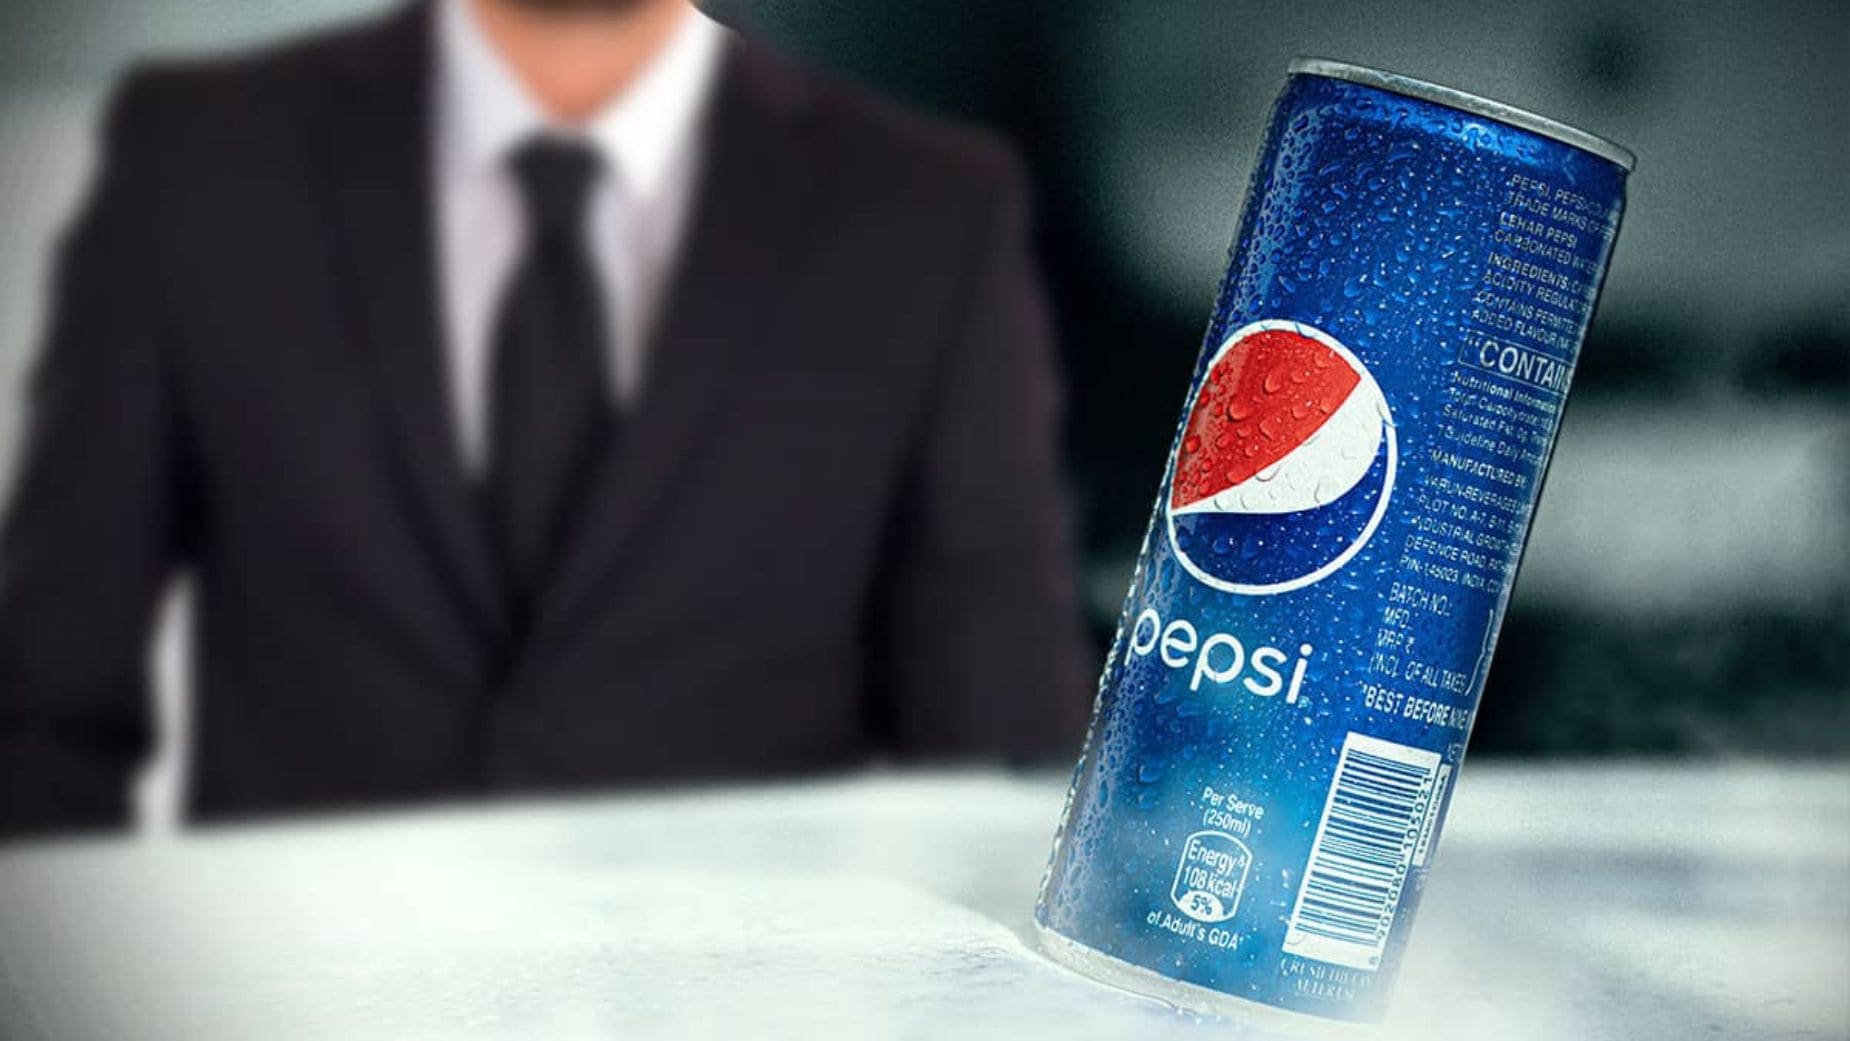 Carrefour anuncia que dejará de vender productos de PepsiCo